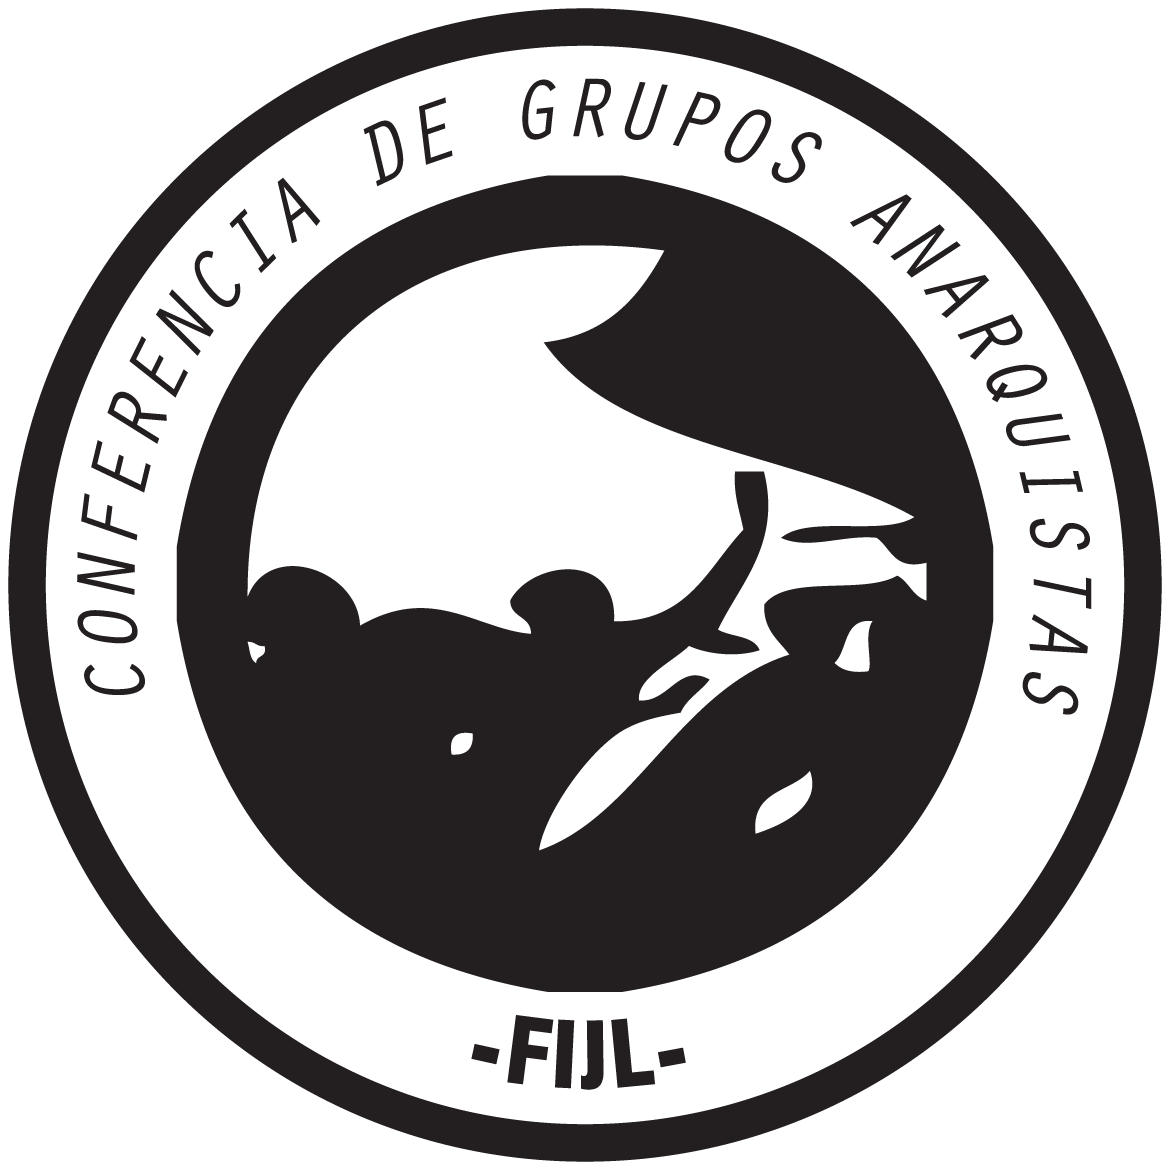 CONFERENCIA DE GRUPOS ANARQUISTAS-FIJL